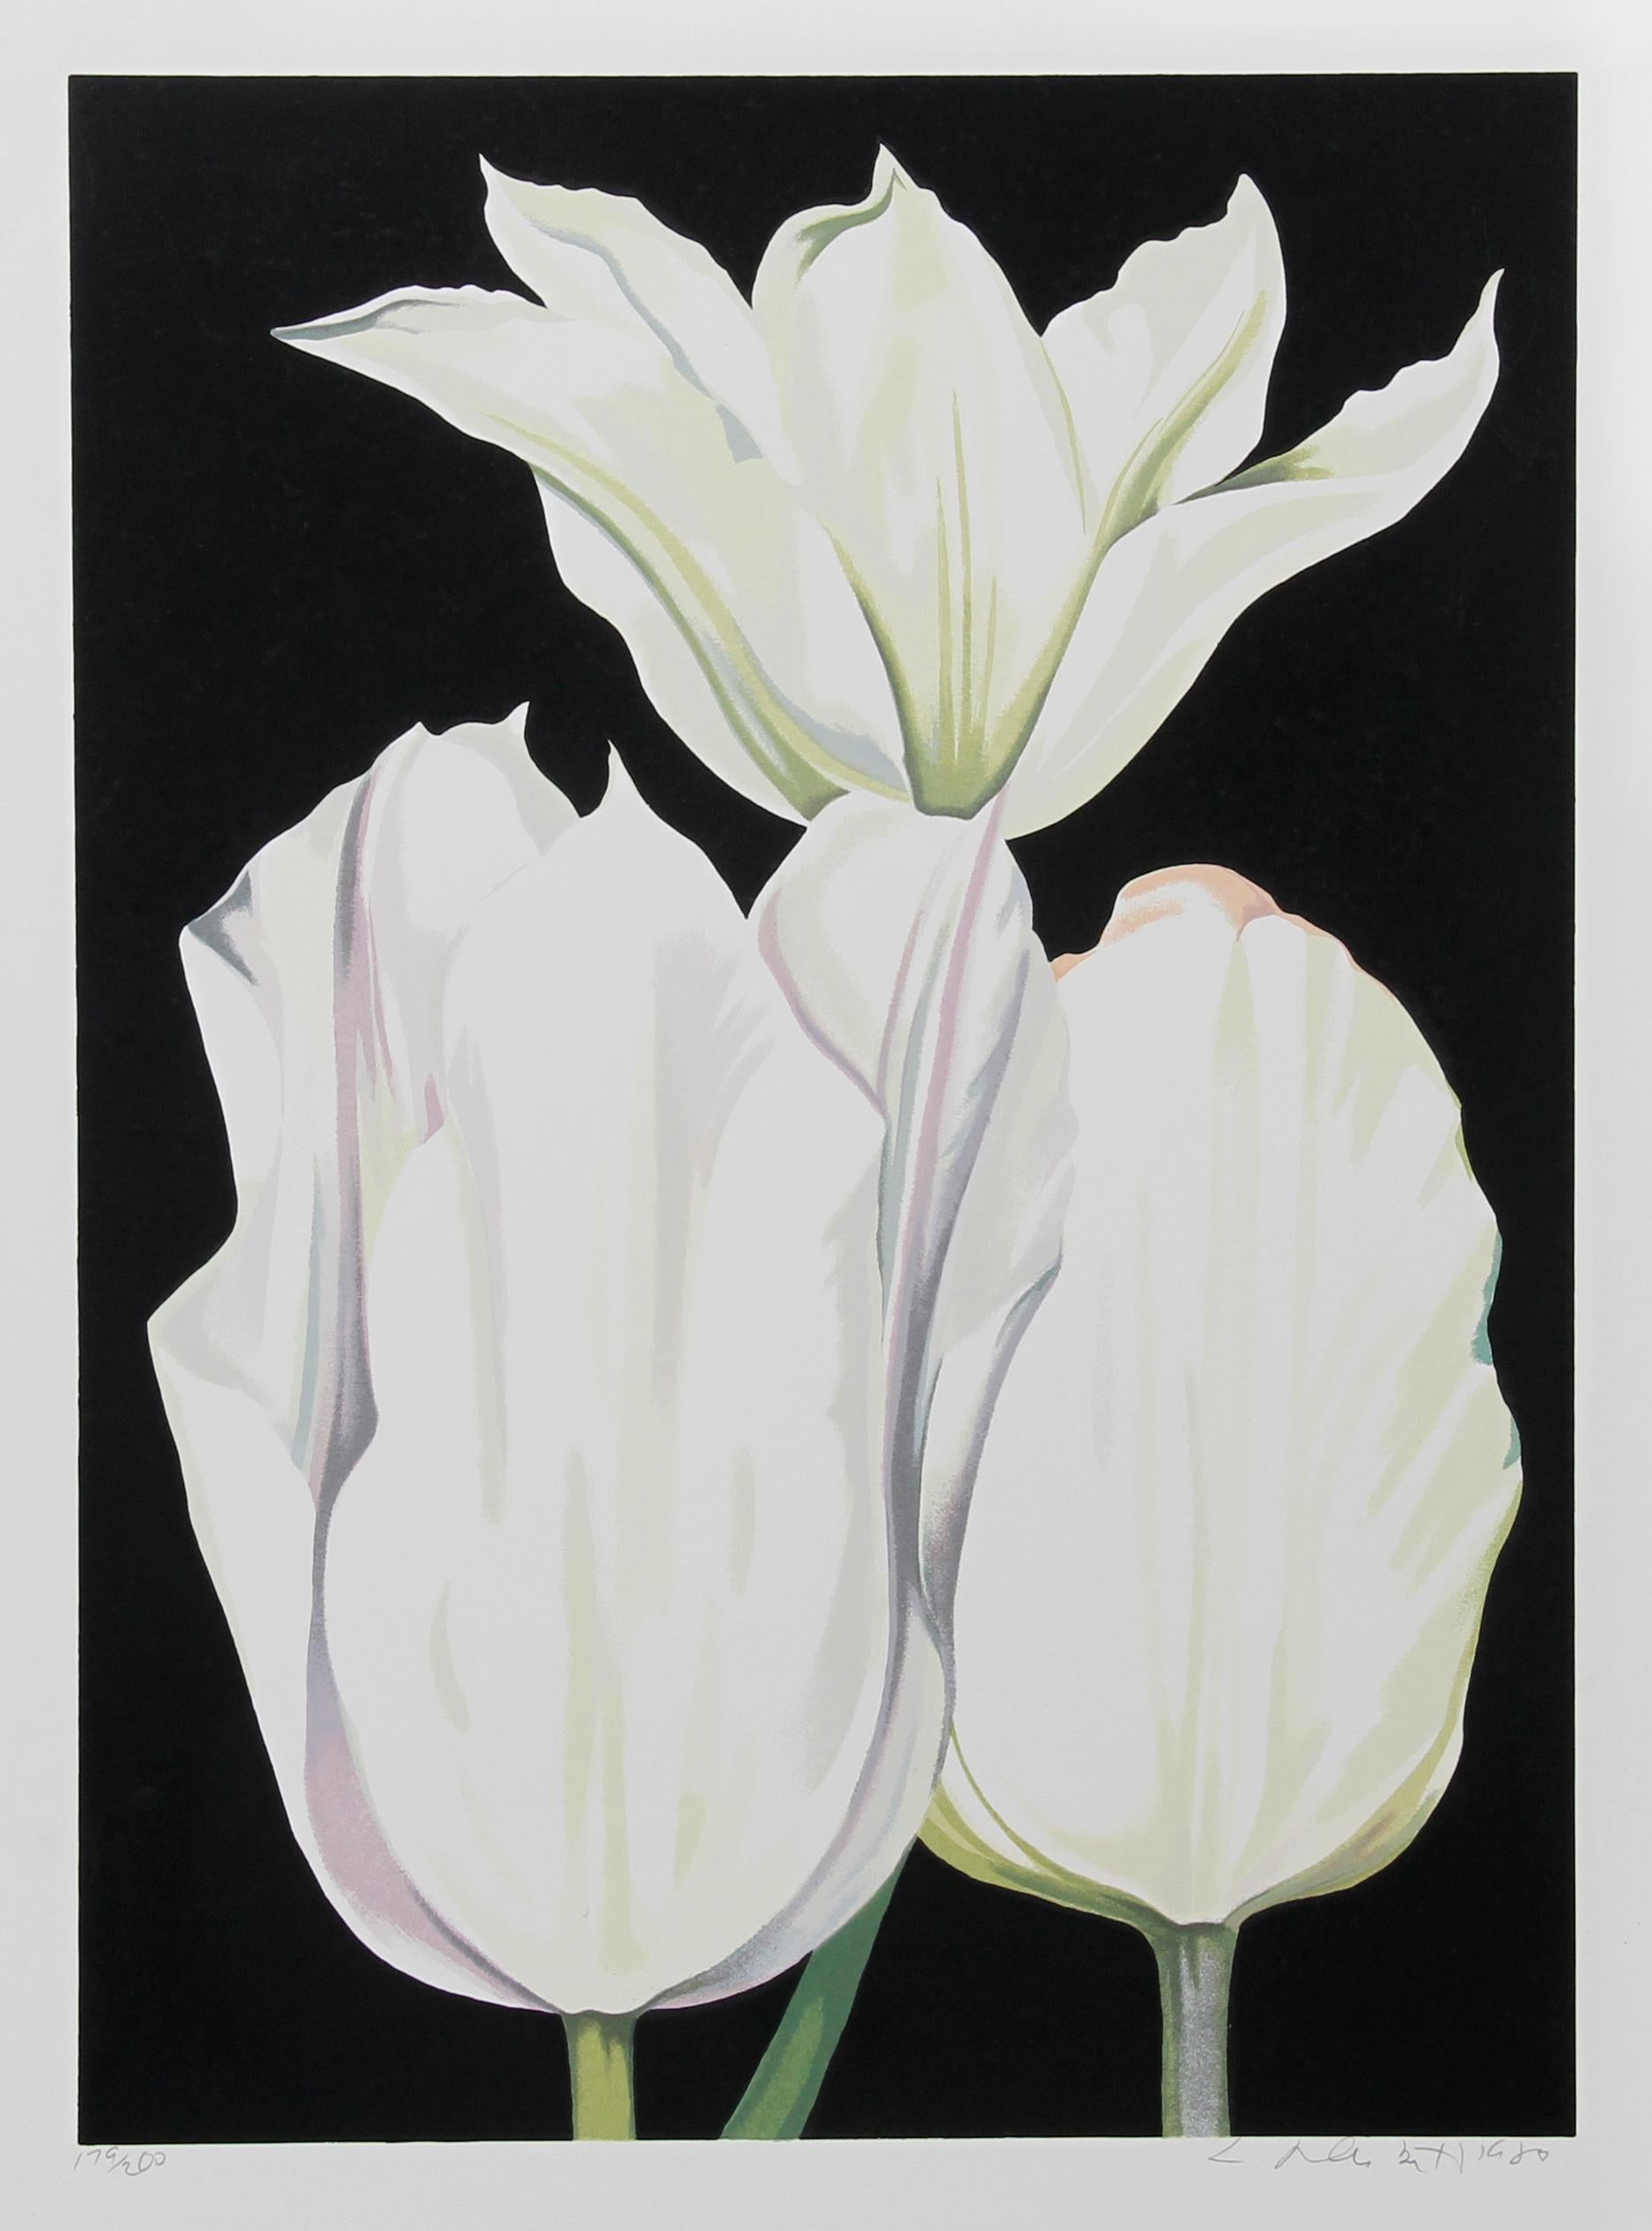 Künstler: Lowell Blair Nesbitt, Amerikaner (1933 - 1993)
Titel: Drei Tulpen auf Schwarz
Jahr: 1980
Medium: Serigraphie, signiert und nummeriert mit Bleistift
Auflage: 200
Bildgröße: 28 x 20 Zoll
Größe: 35 Zoll x 26 Zoll (88,9 cm x 66,04 cm)